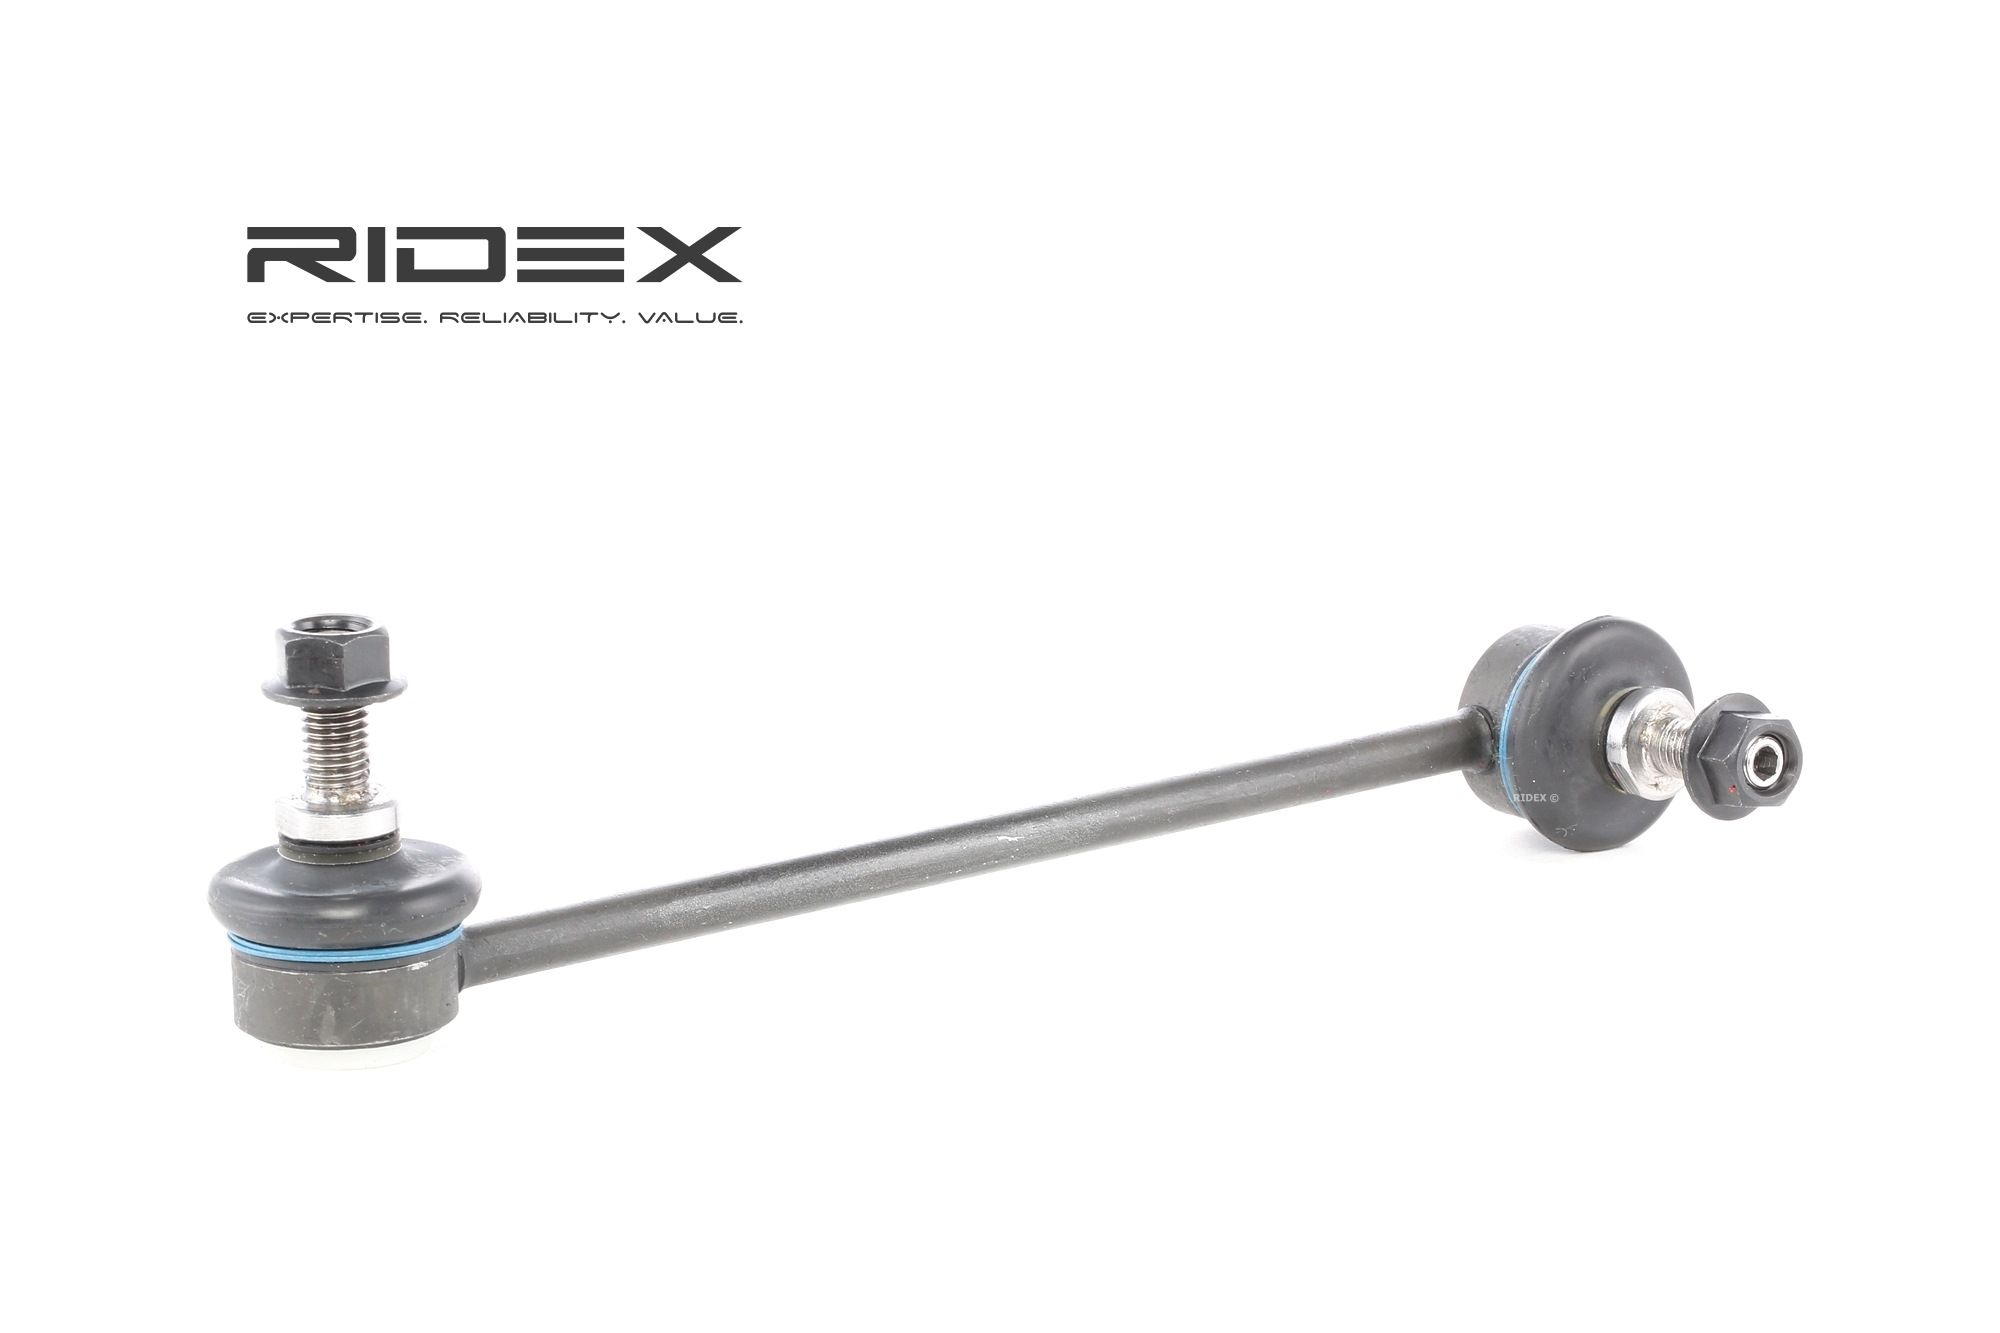 RIDEX 3229S0122 originali MERCEDES-BENZ VITO 2021 Puntone stabilizzatore Assale anteriore Dx, 230mm, M10x1,5, con accessori